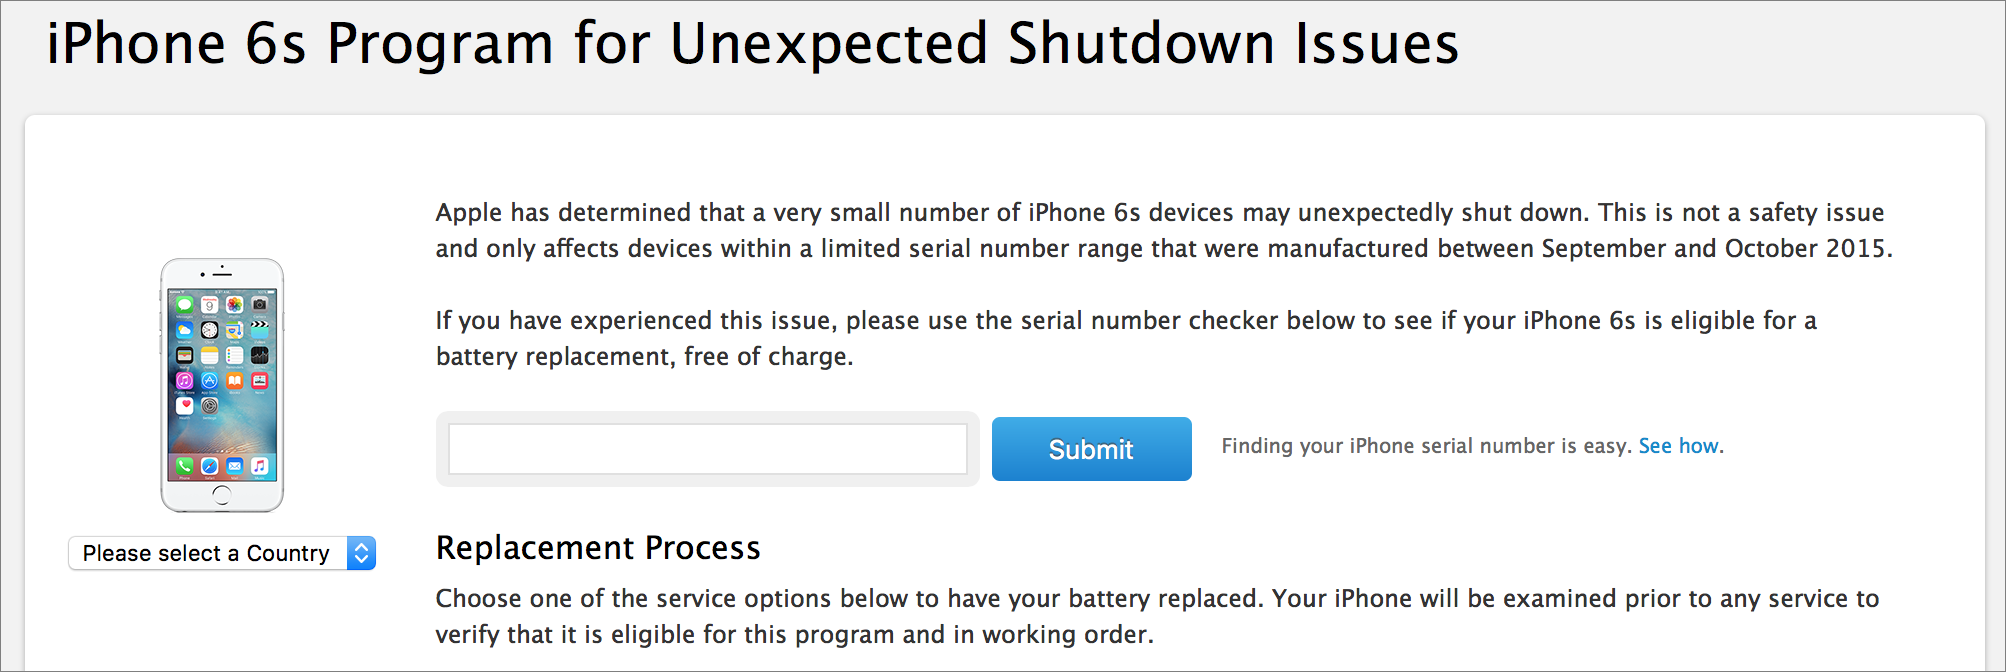 apple announces iphone 6s repair program for unexpected shutdowns